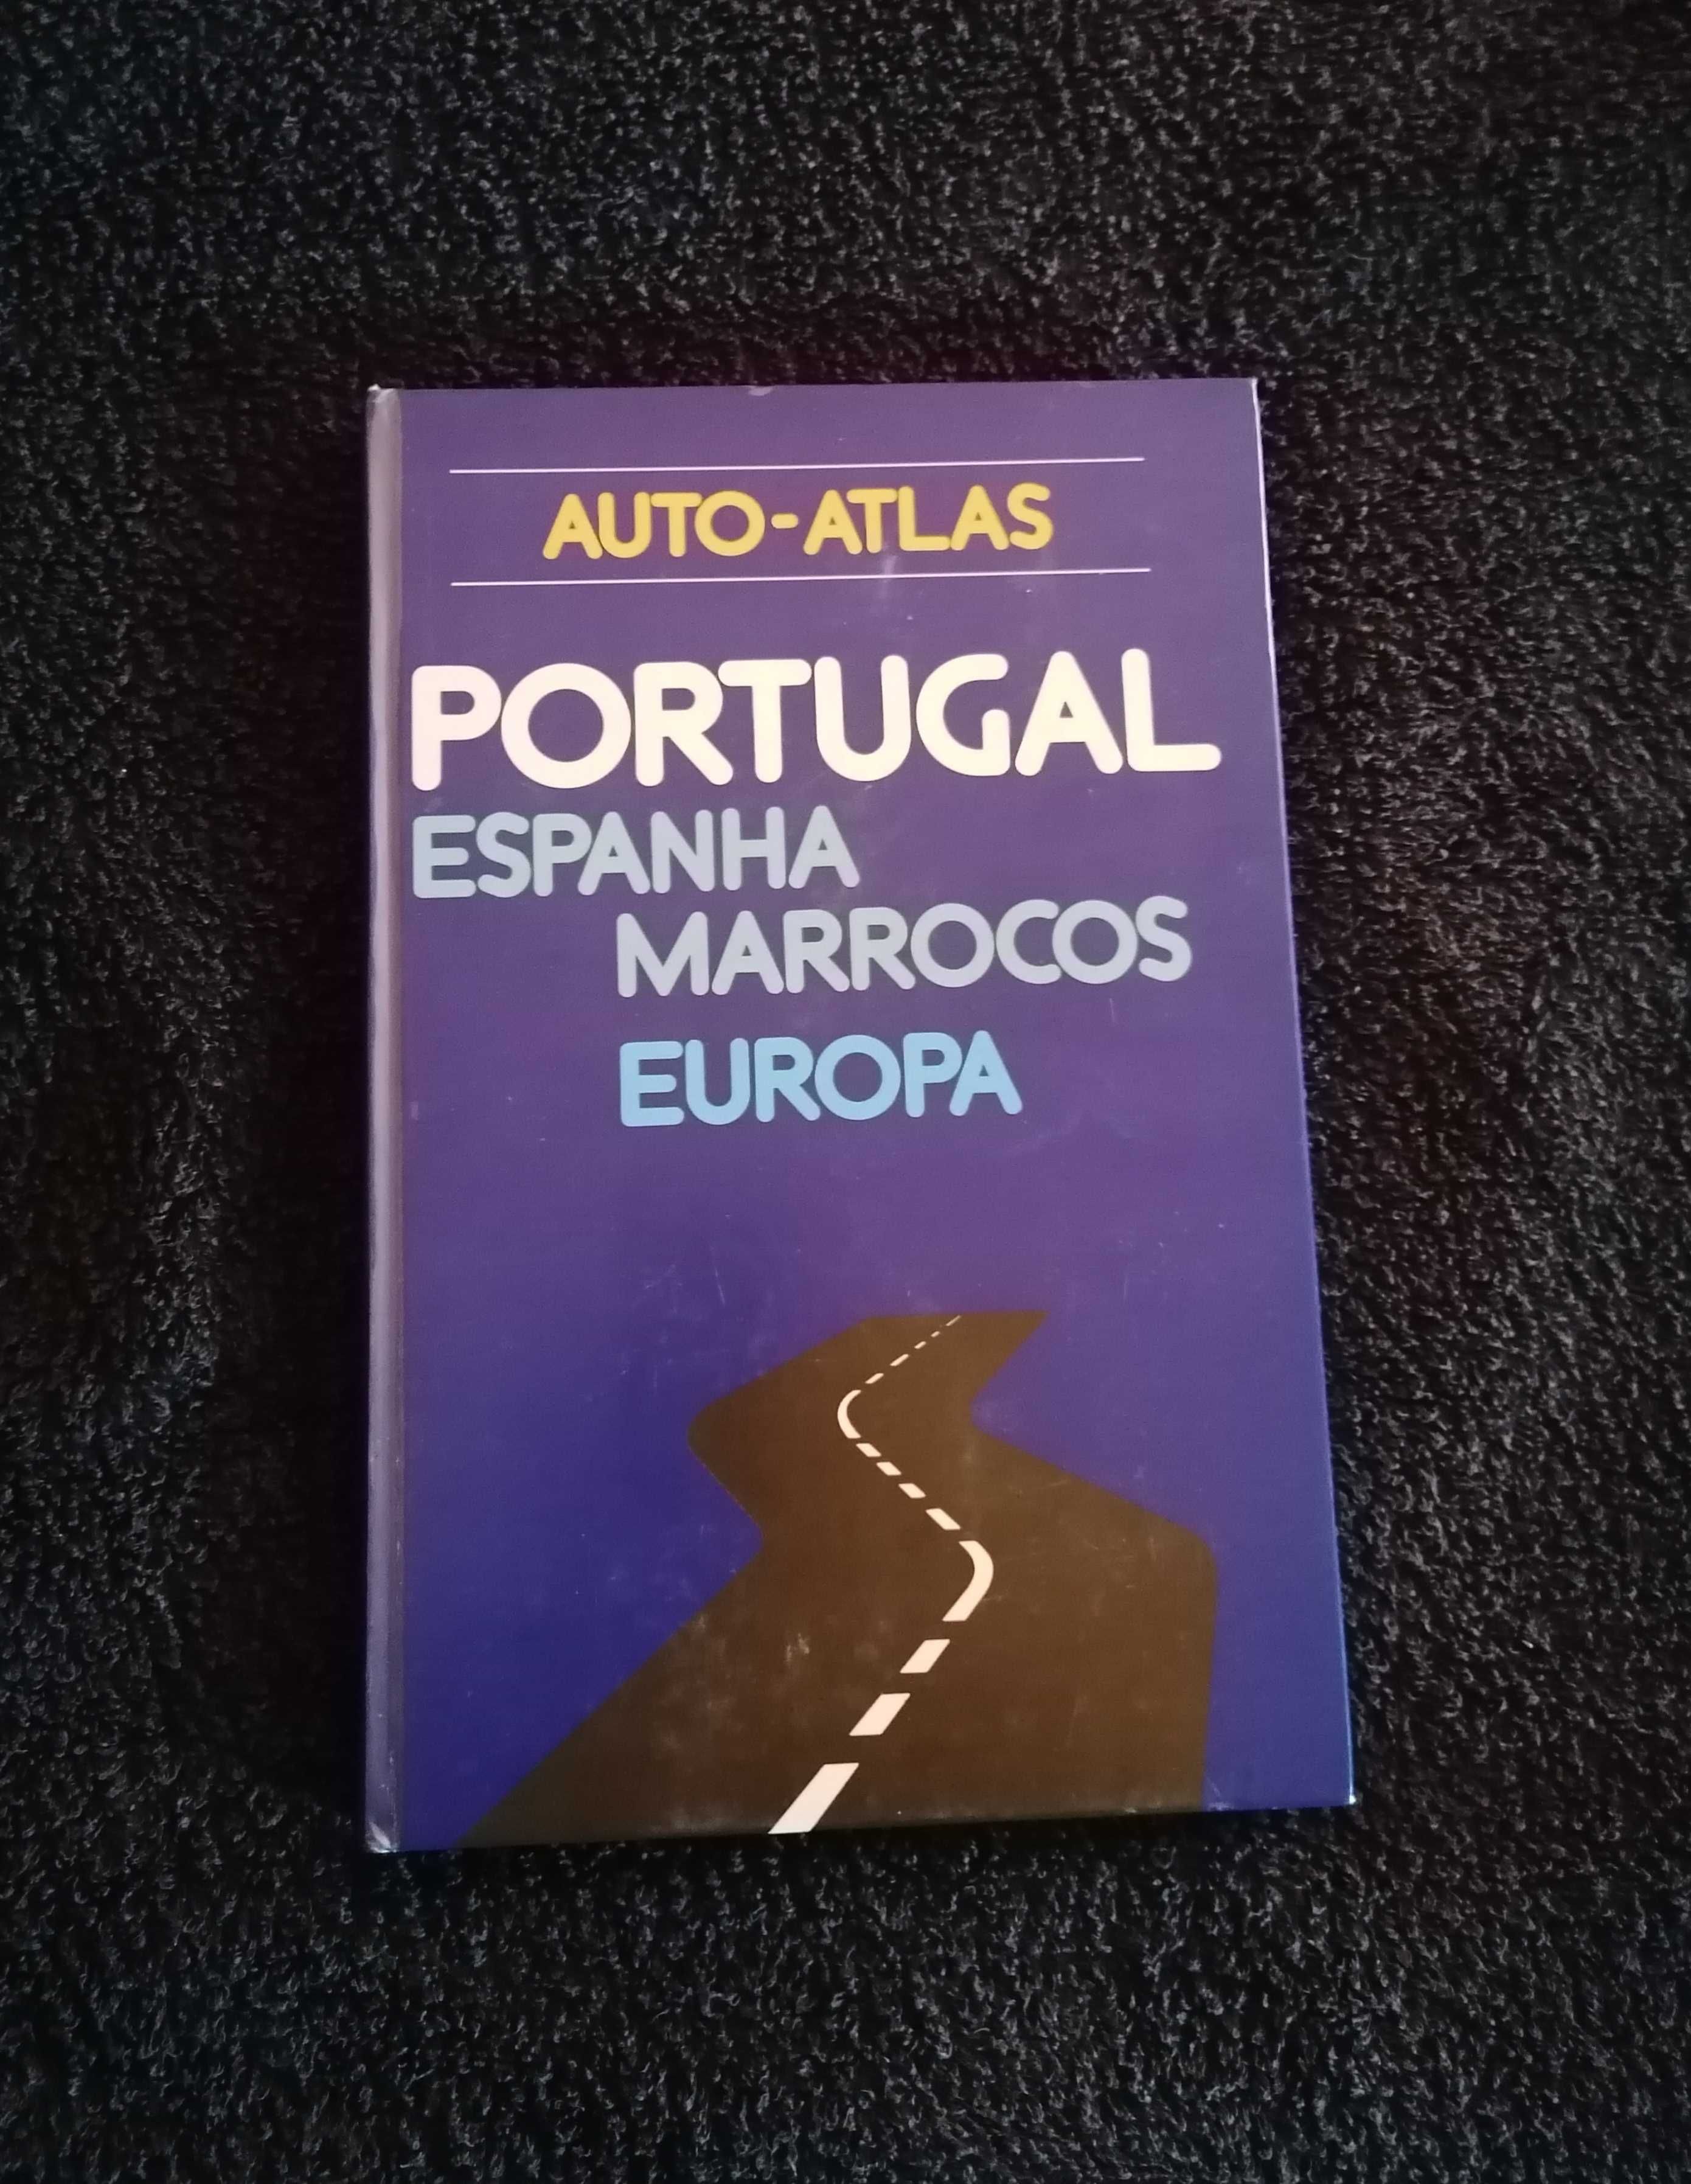 Auto Atlas + Roteiro 2 livros 15€